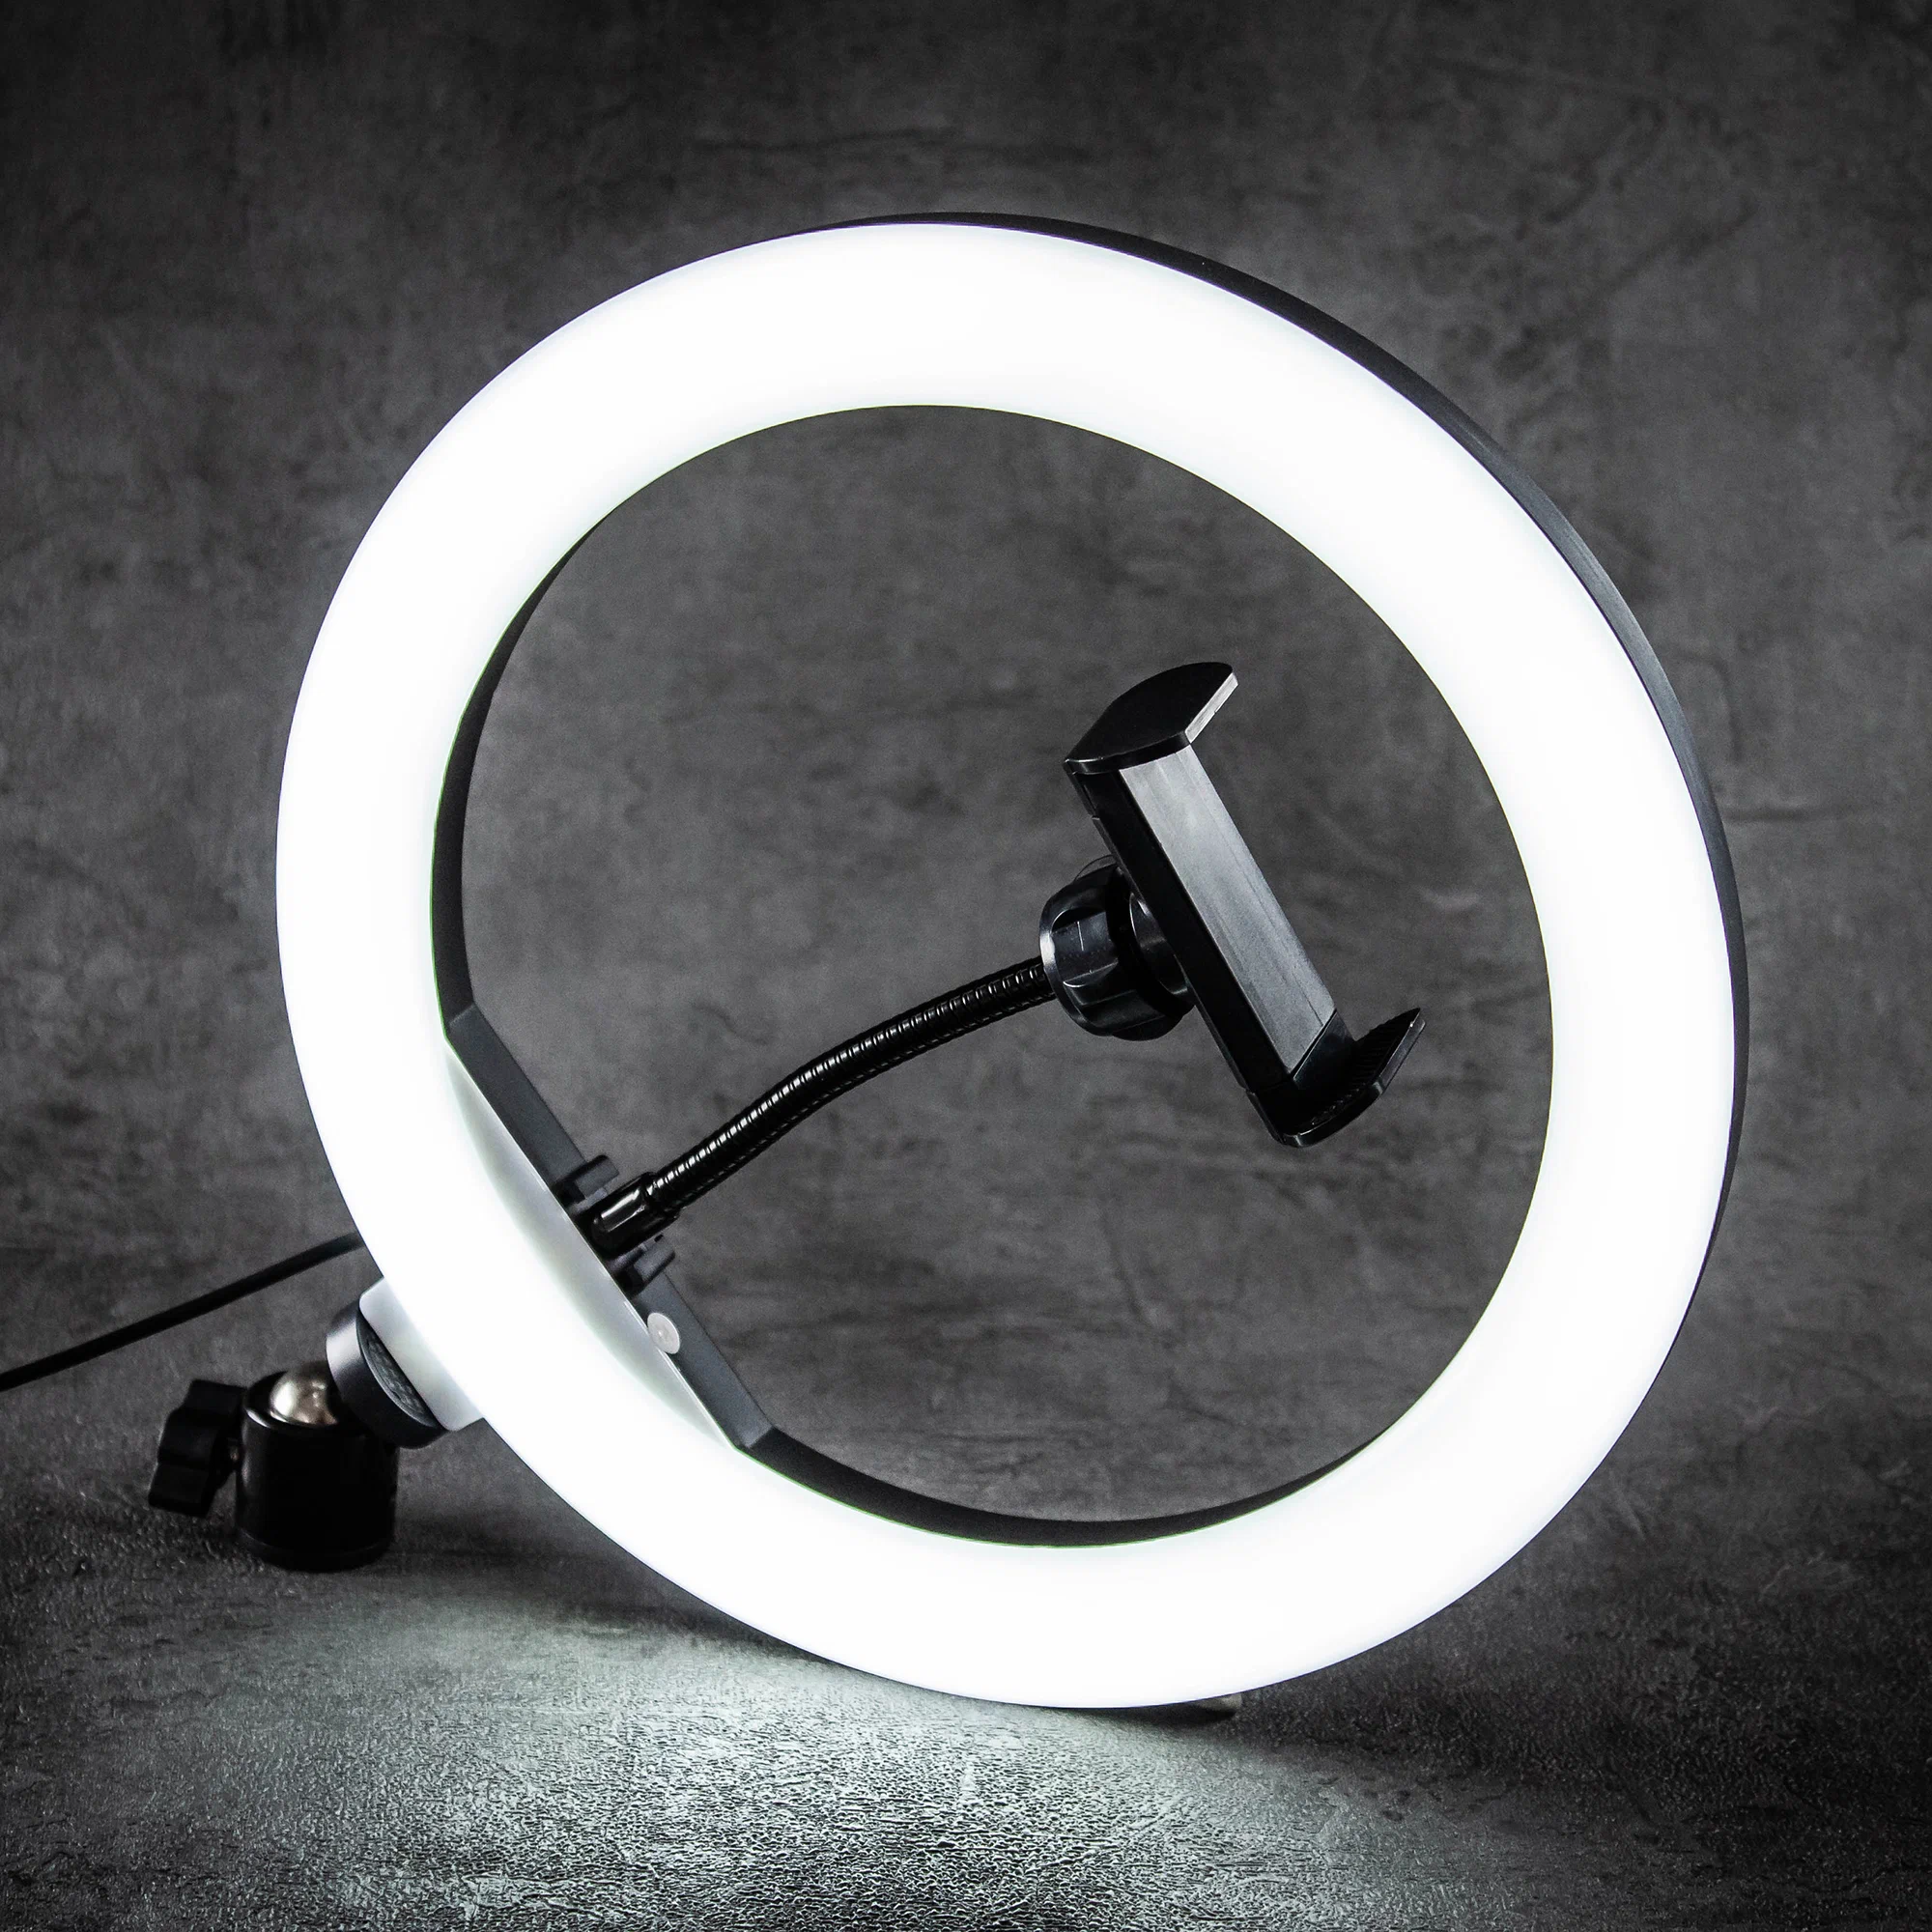 Кольцевая лампа со штативом для телефона и фотоаппарата, WALKER, WLR-2610, 26см, LED лампа белого света для селфи, кольцо для фото и видео, осветитель